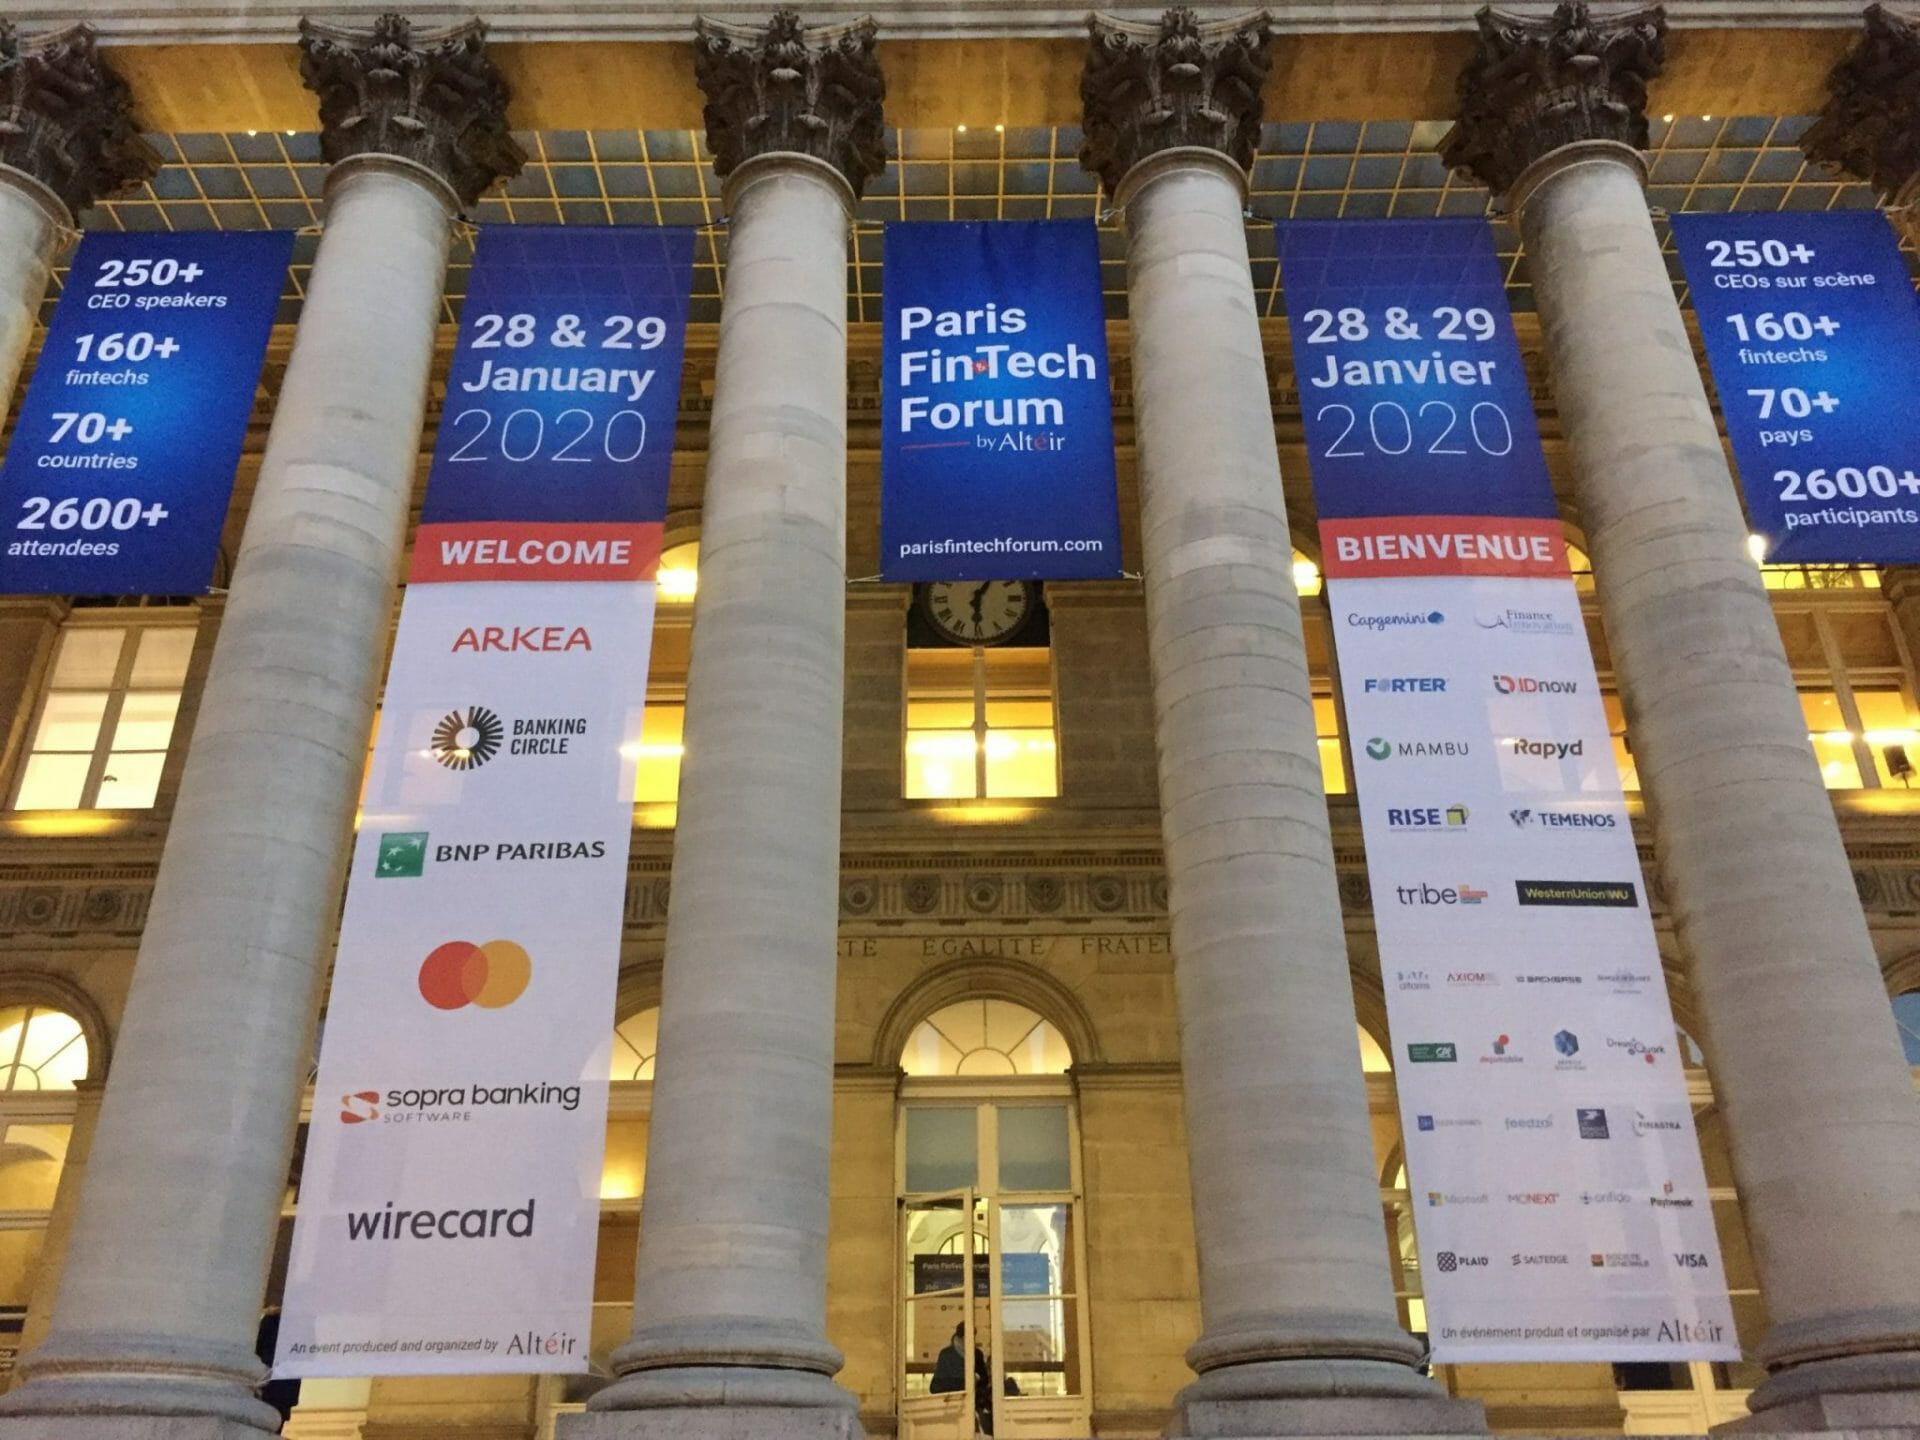 Paris FinTech Forum venue